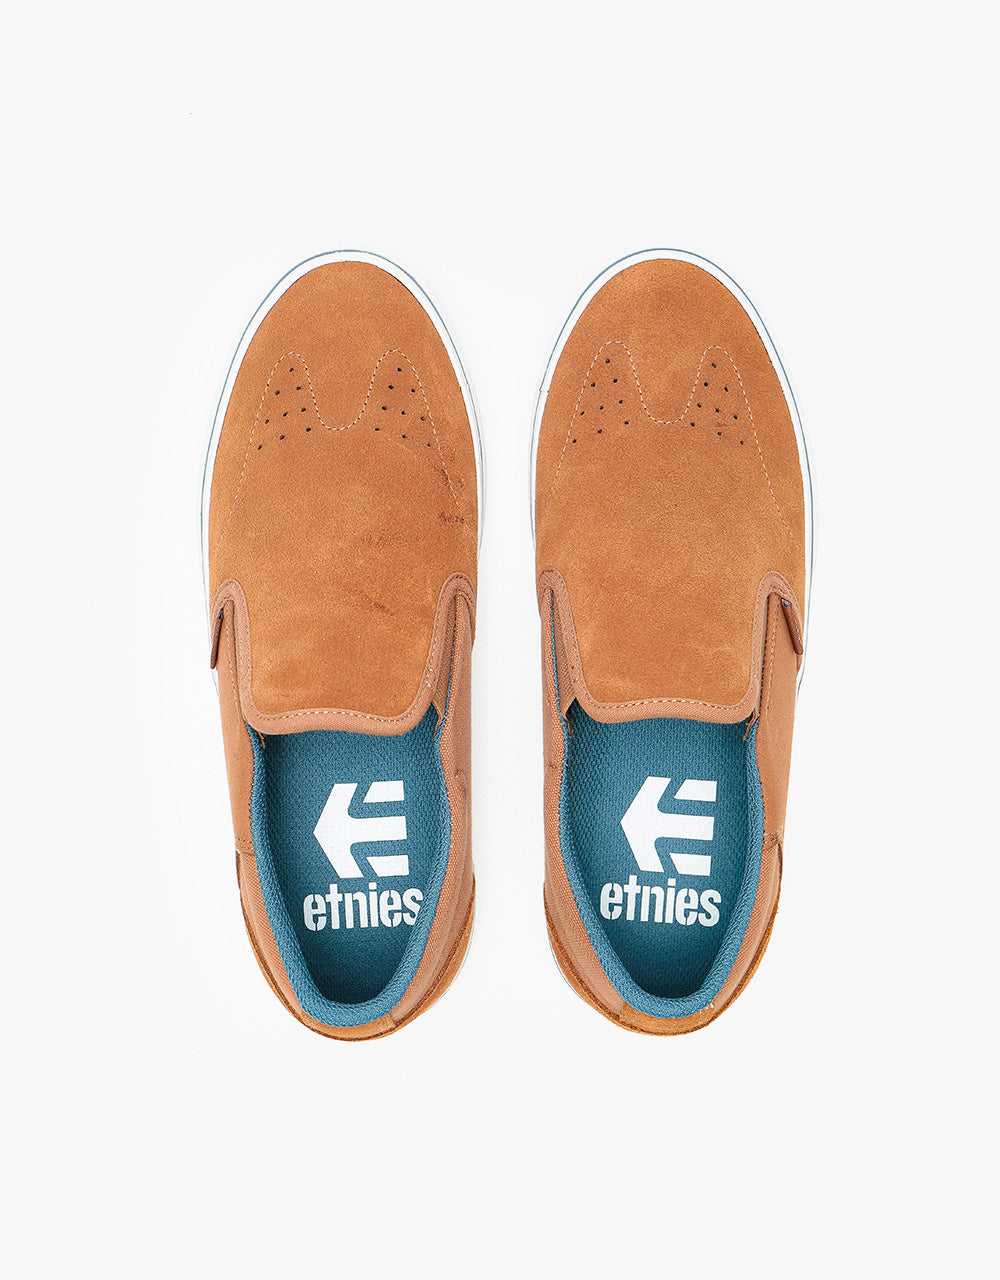 Etnies Marana Slip Skate Shoes - Brown